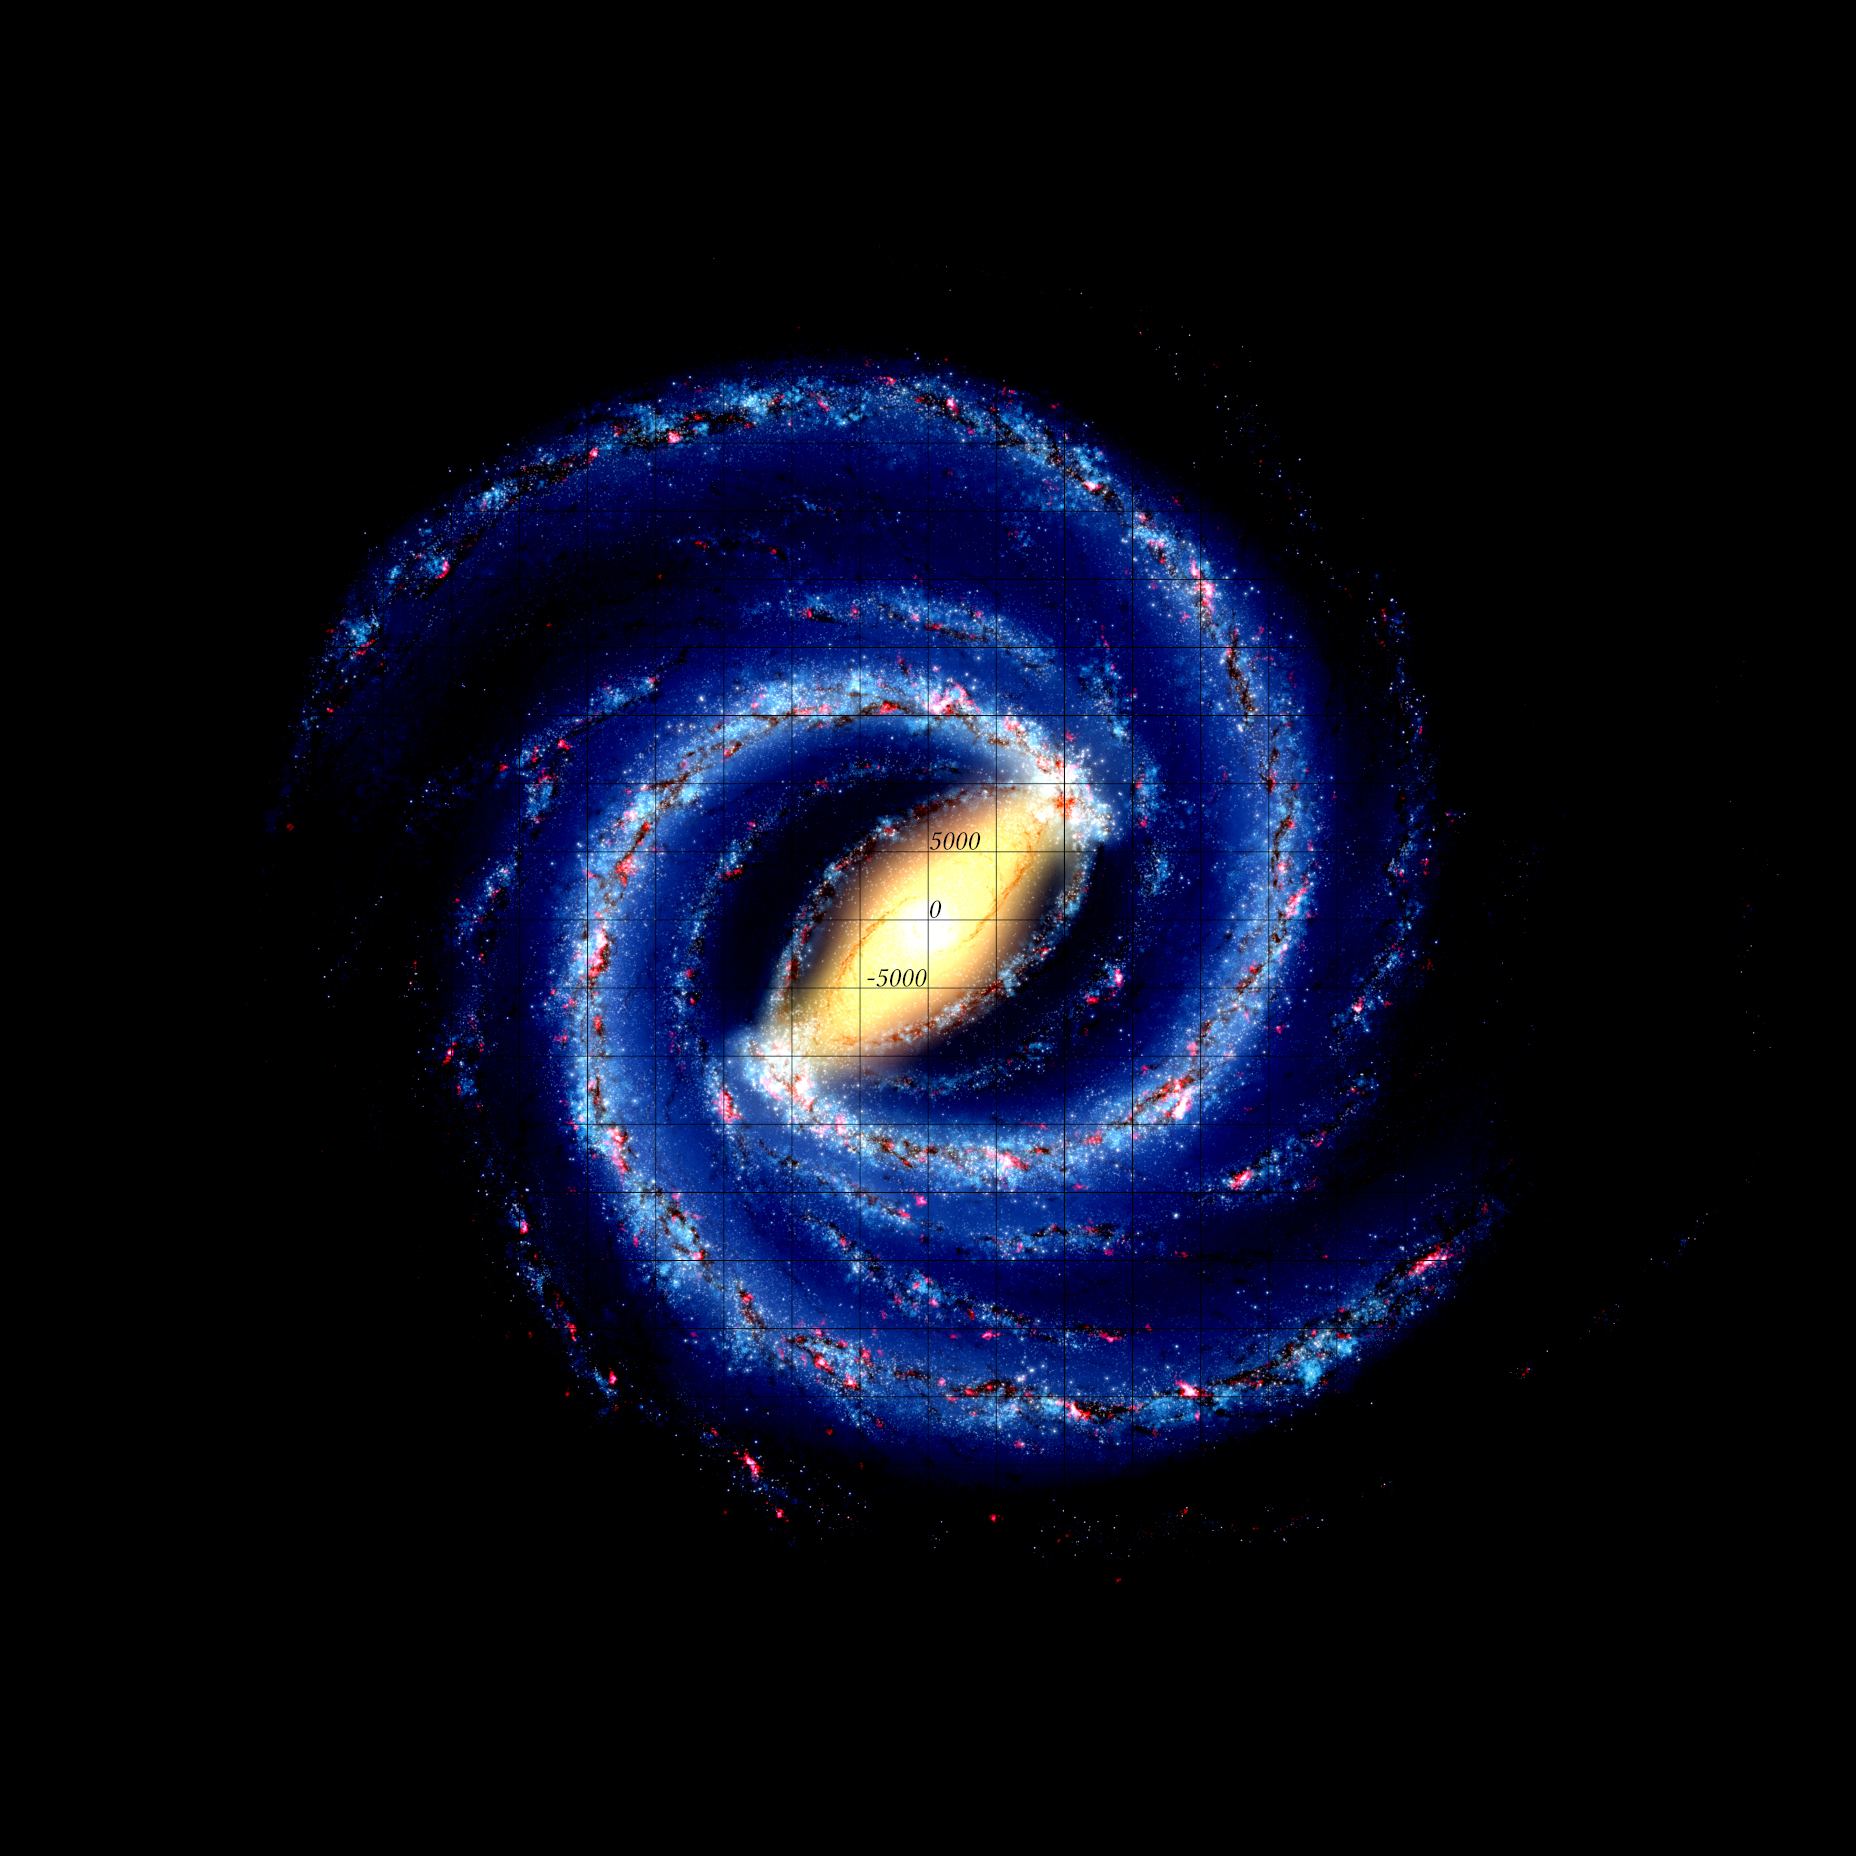 Eine von schwarzen Linien horizontal und vertikal gerasterte Draufsicht der Milchstraße. Es handelt sich, da wir die Galaxis nicht fotografieren können, um eine künstlerische Impression auf Basis der Fotos, die wir von anderen Spiralgalaxien kennen. Das schwarze Gitter unterteilt, wie drei Beschriftungszahlen -5000, 0 und 5000 zeigen, die Draufsicht in Quadrate mit Seitenlängen von 5000 Lichtjahren.